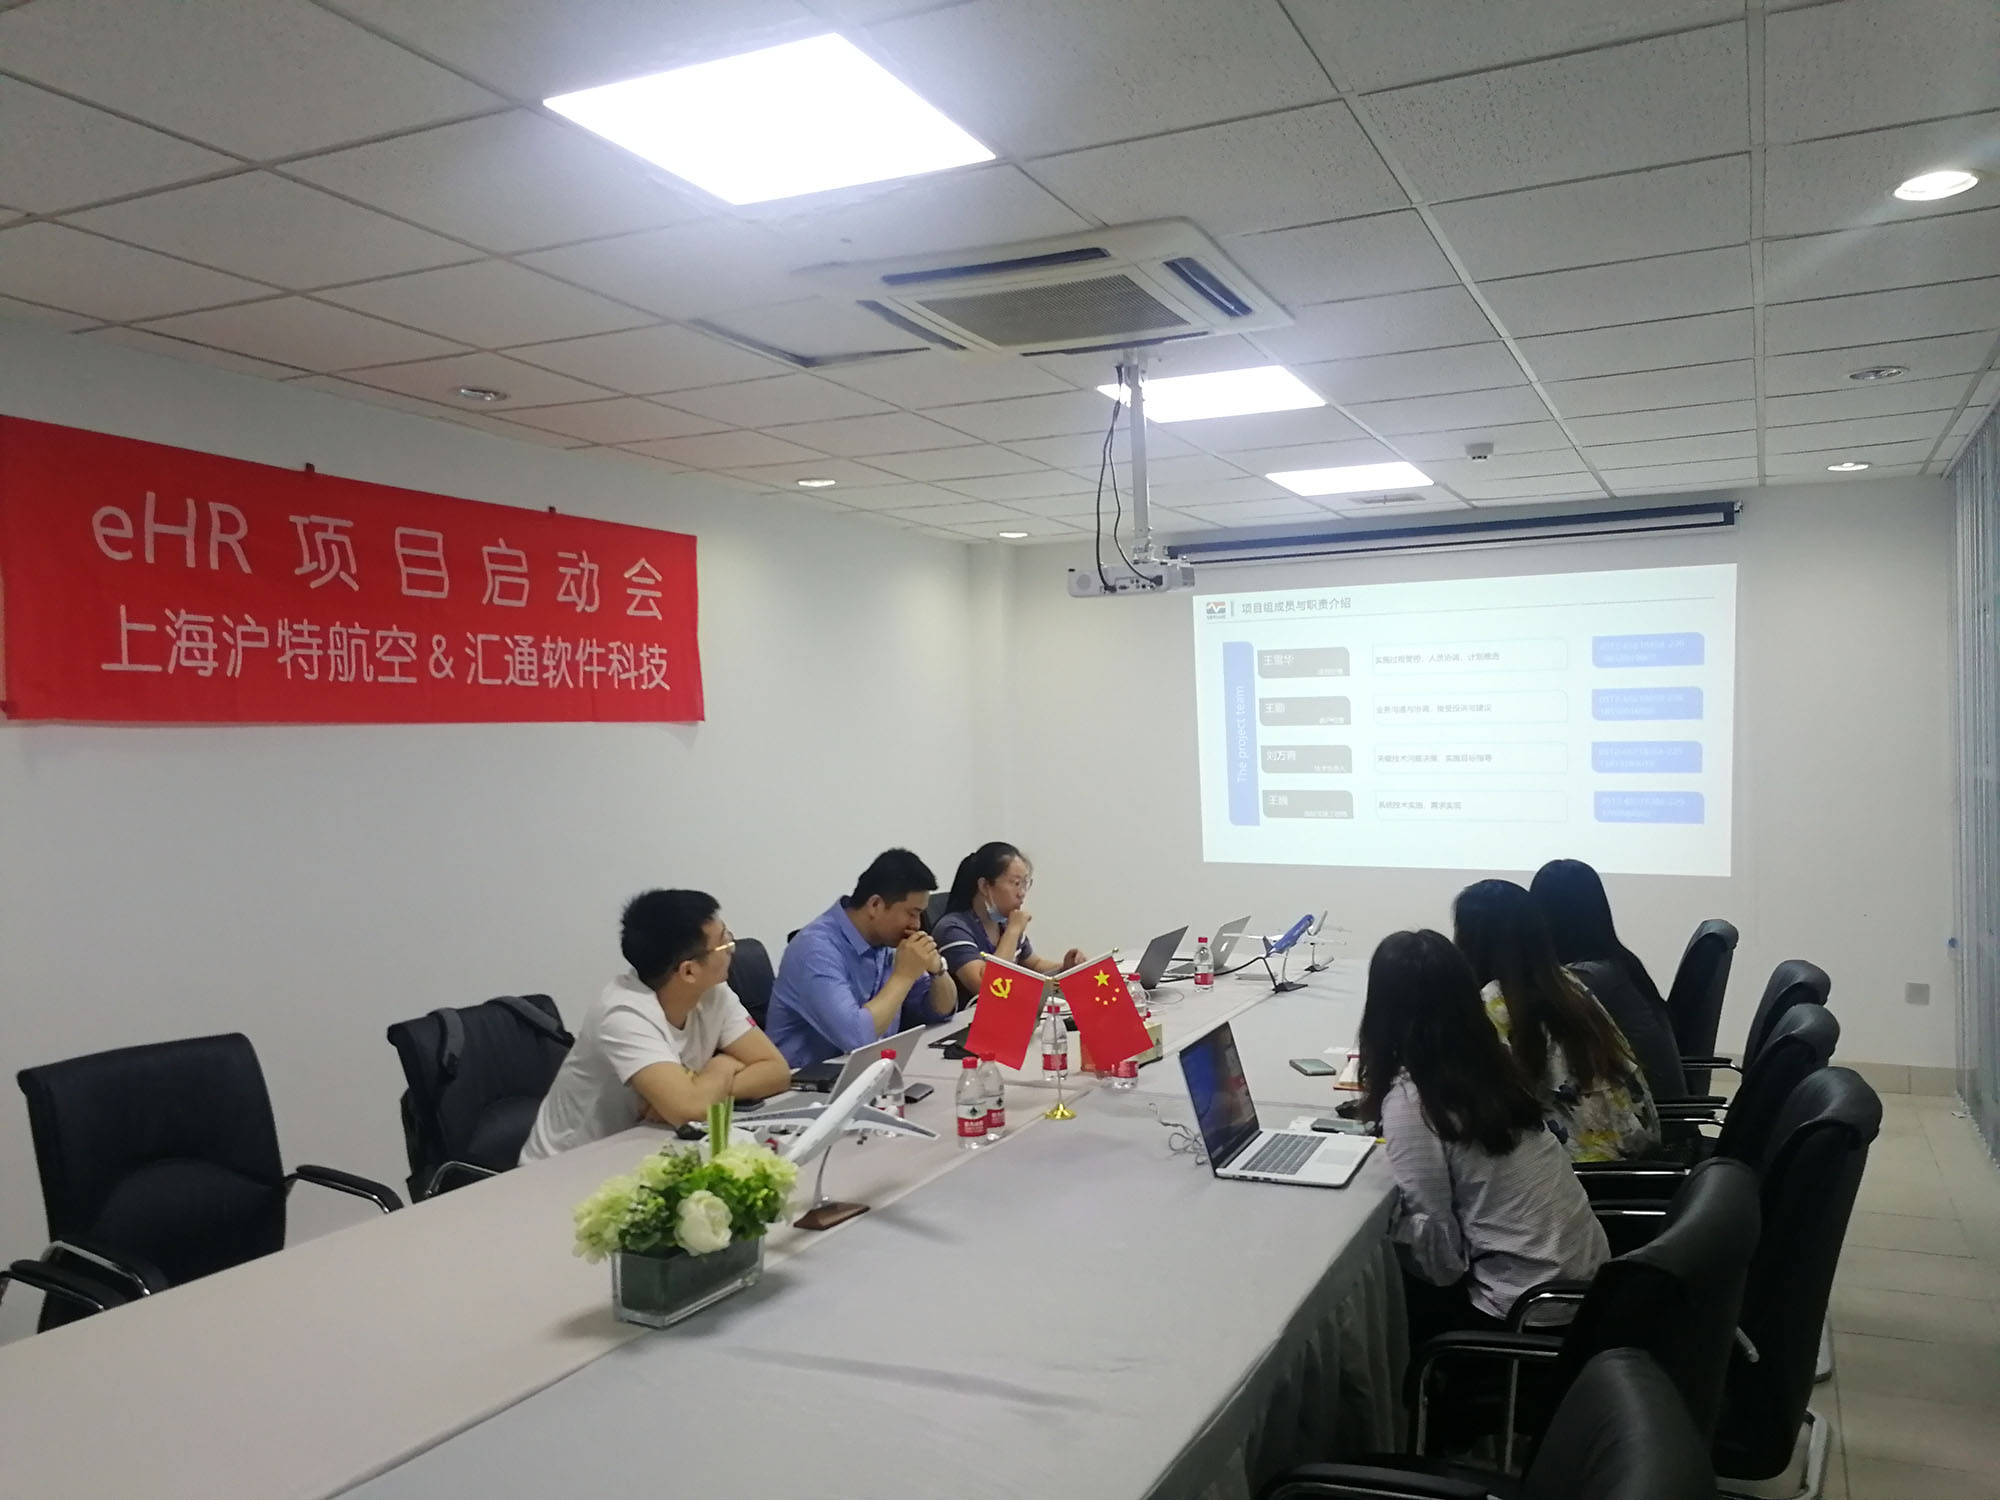 上海沪特航空&汇通科技eHR系统项目专题报道